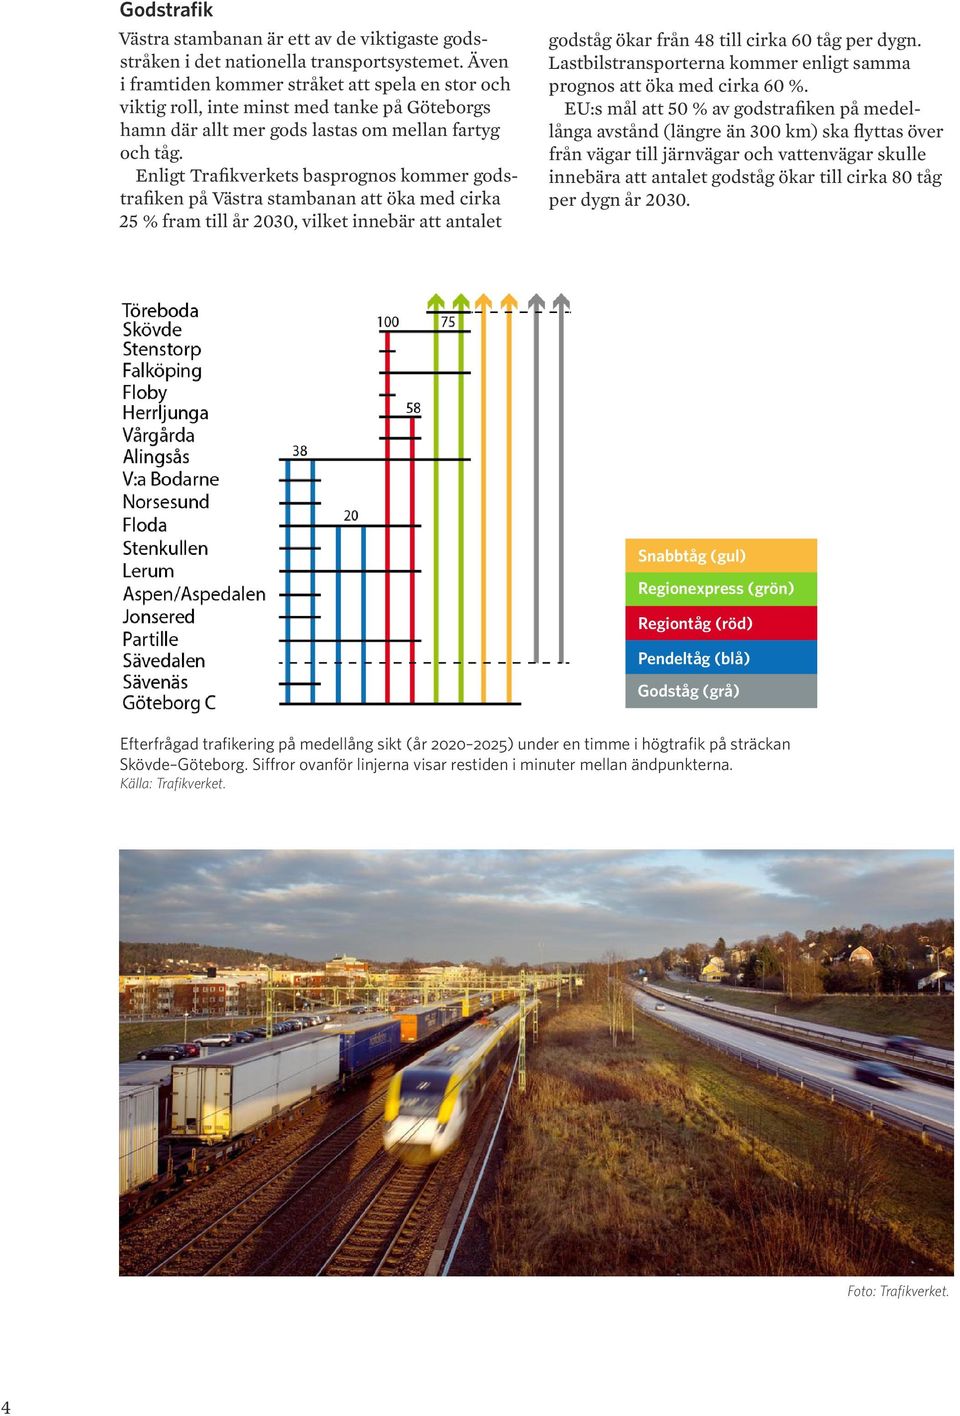 Enligt Trafikverkets basprognos kommer godstrafiken på Västra stambanan att öka med cirka 25 % fram till år 2030, vilket innebär att antalet godståg ökar från 48 till cirka 60 tåg per dygn.